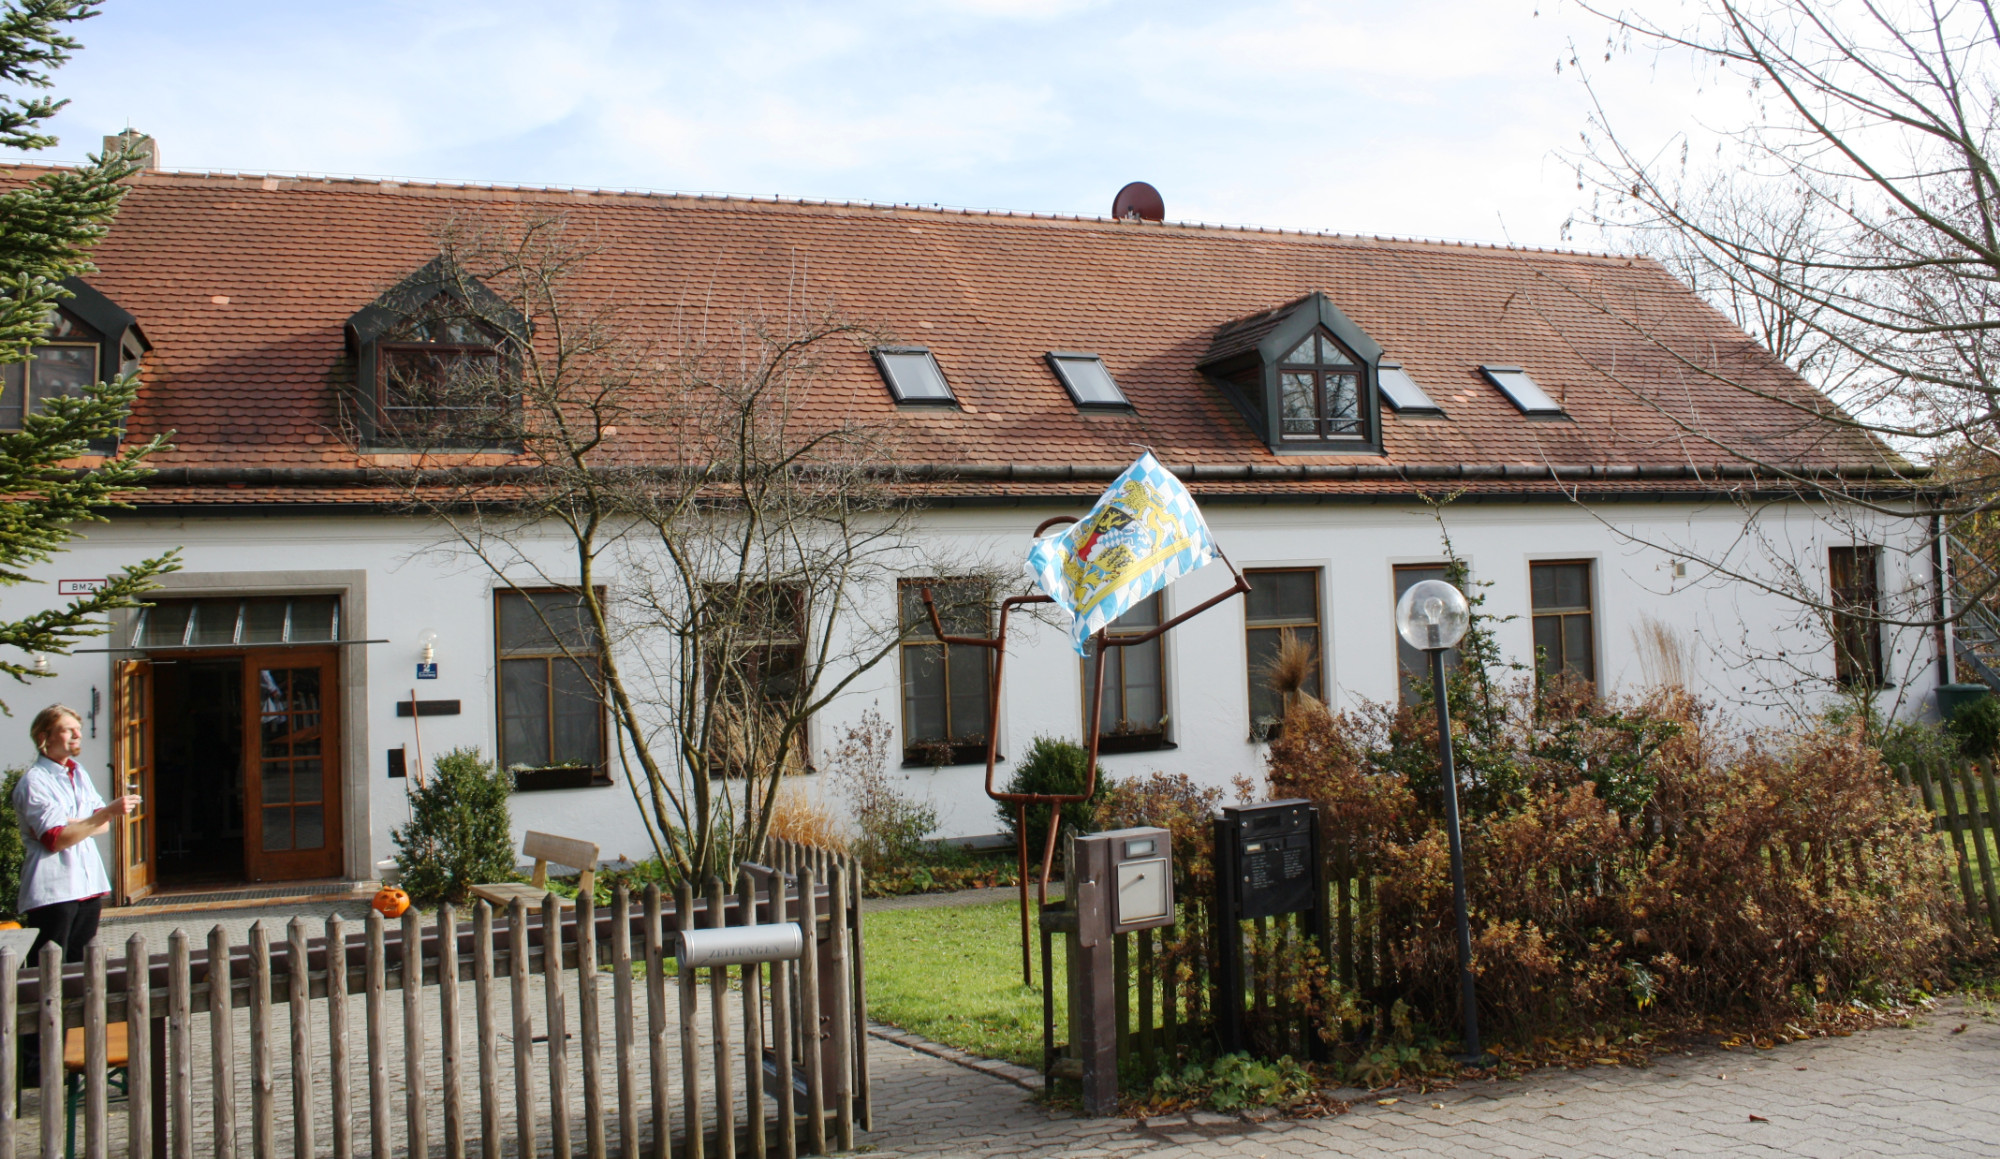 Das Hermann-Altmann-Haus ist seit 40 Jahren ein besonderes Heim